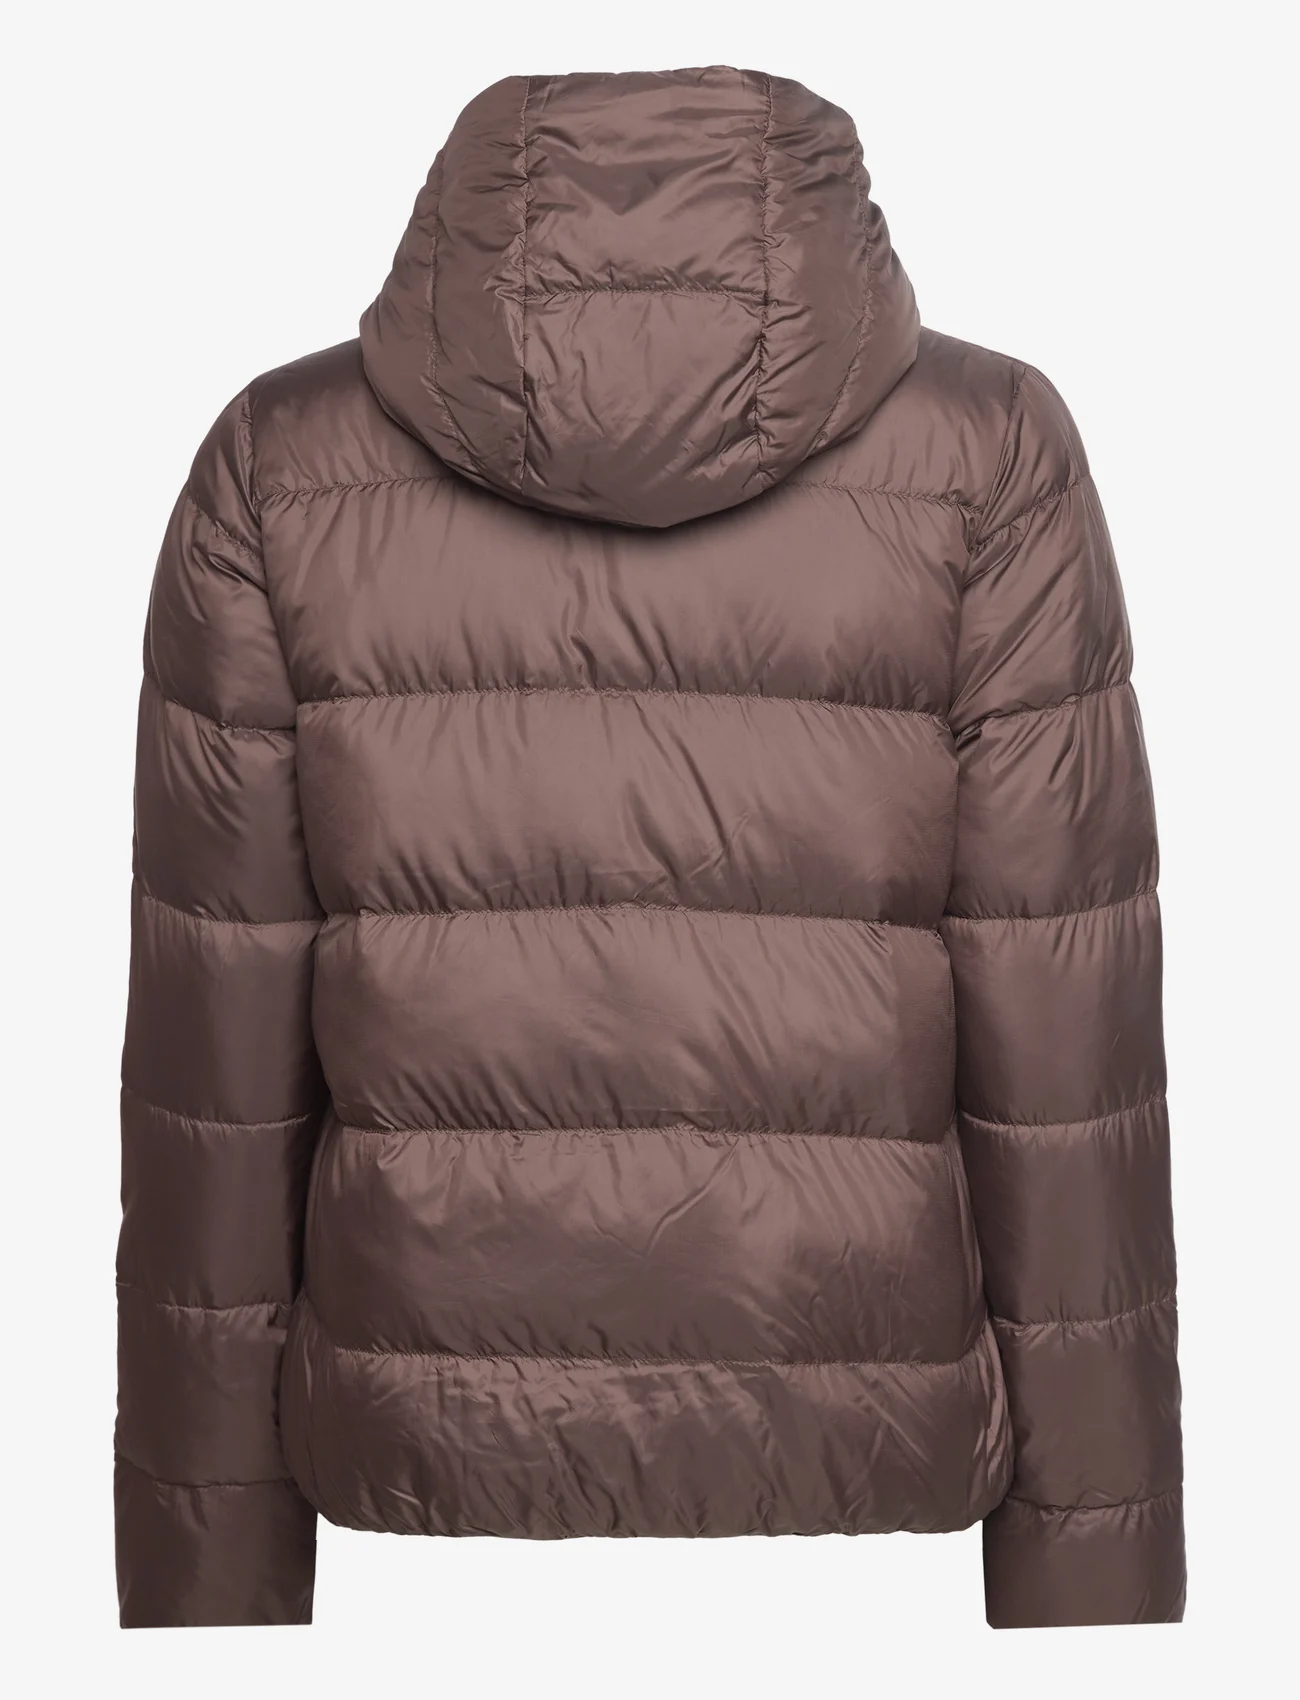 Ilse Jacobsen - Outdoor coat - winter jackets - chocolate brown - 1